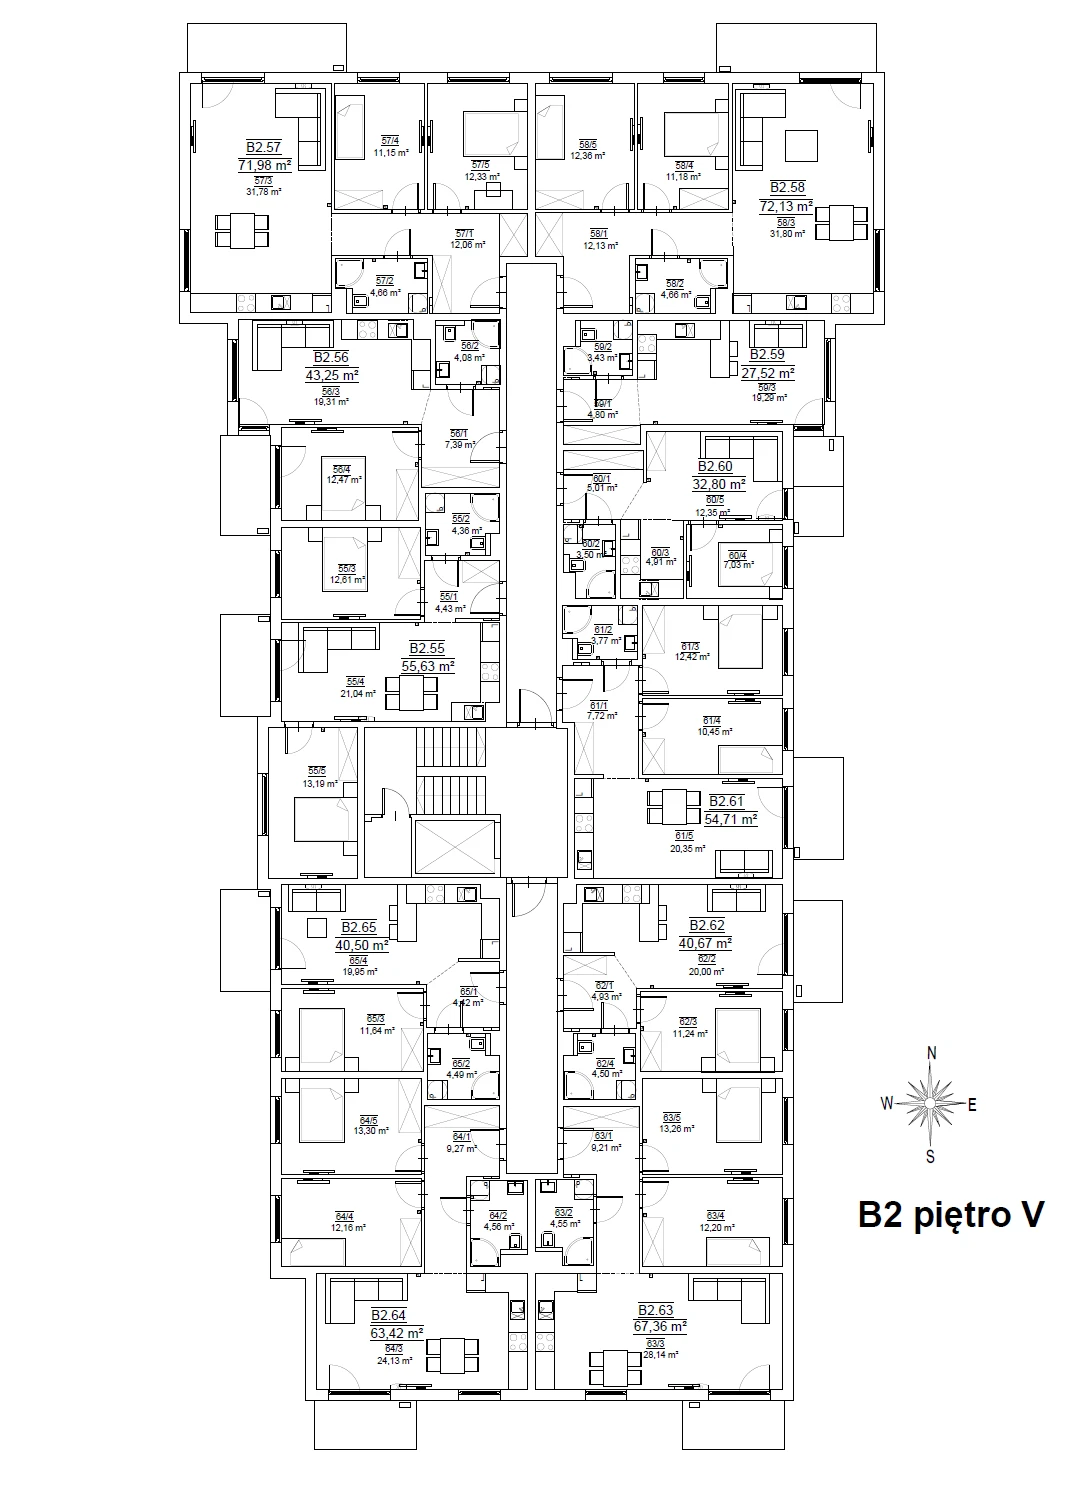 B2 - Piętro 5